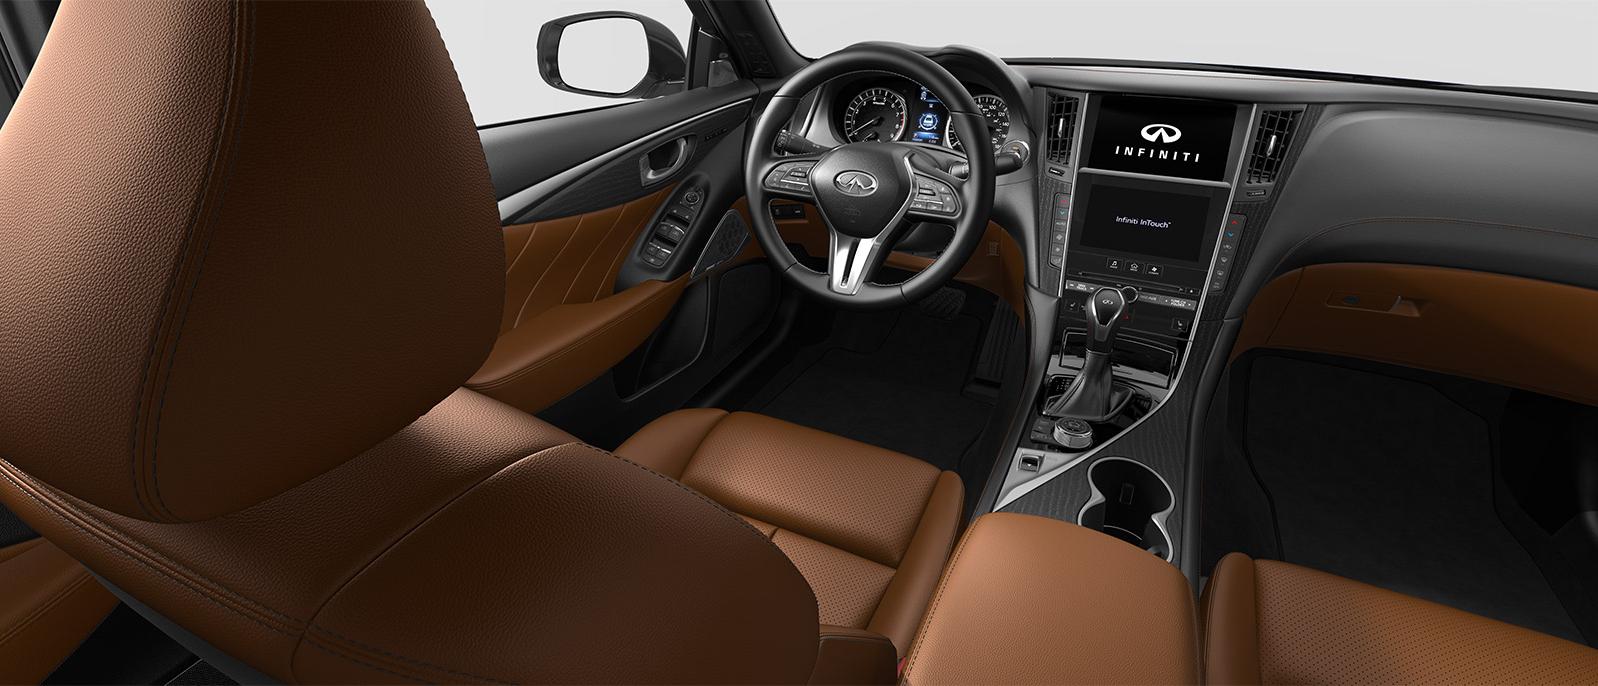 INFINITI Q50 Signature Edition trim interior in Saddle Brown color scheme.